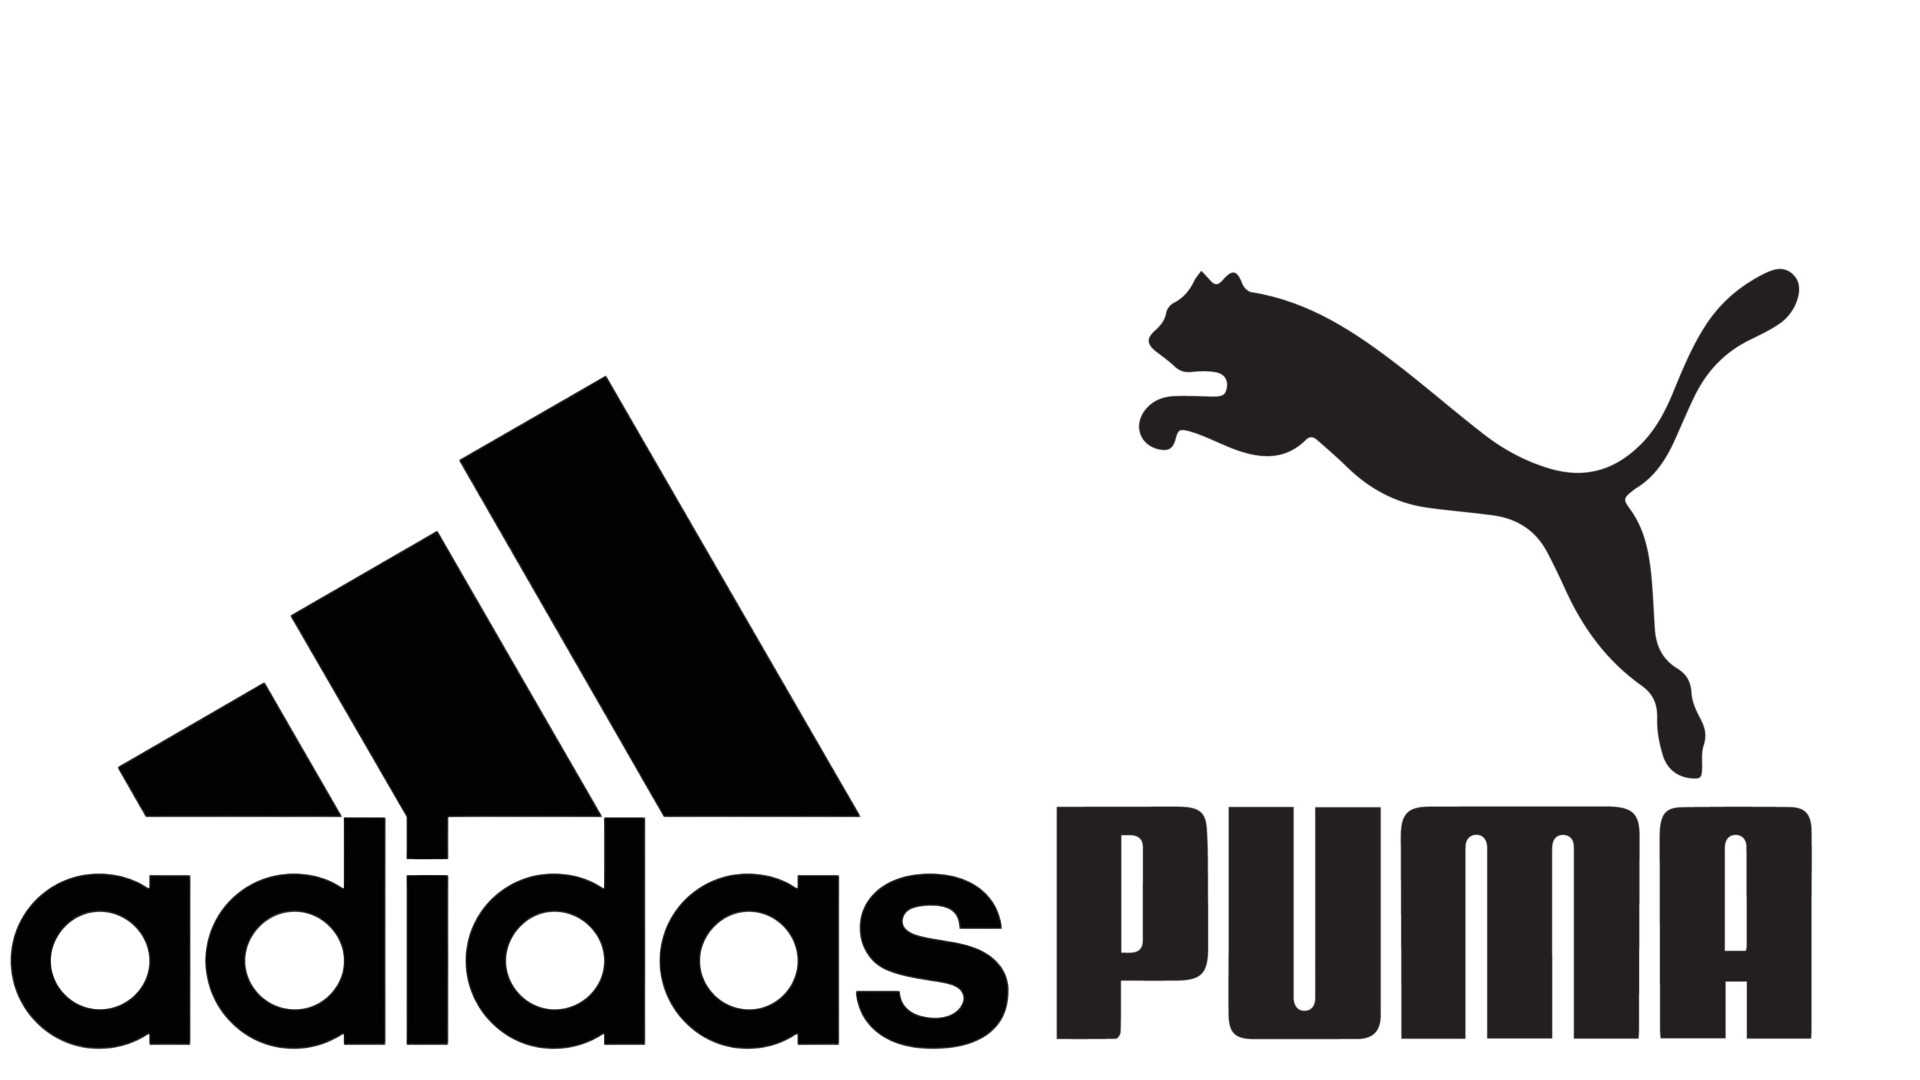 Sejarah Adidas dan Puma, Kisah Seteru Dua Saudara di Bisnis Sepatu